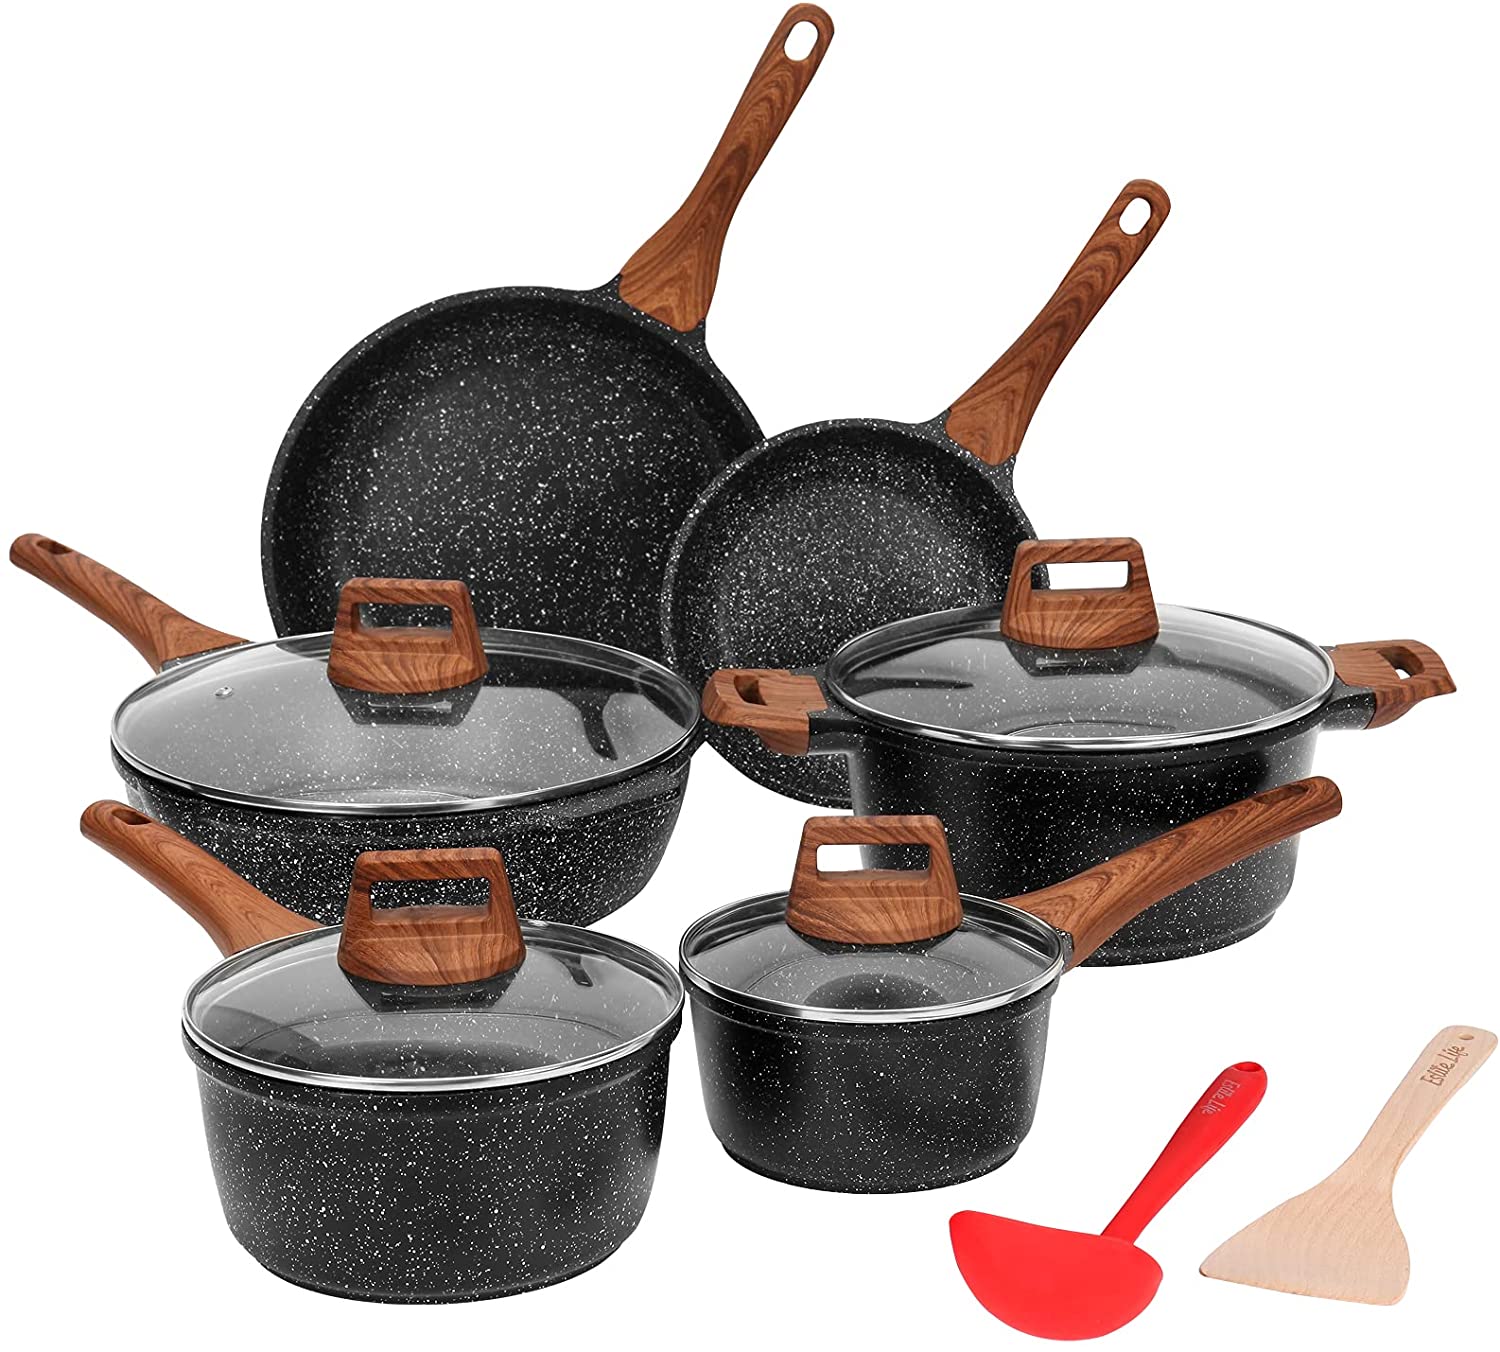 Eslite life 11 piece pots and pans set